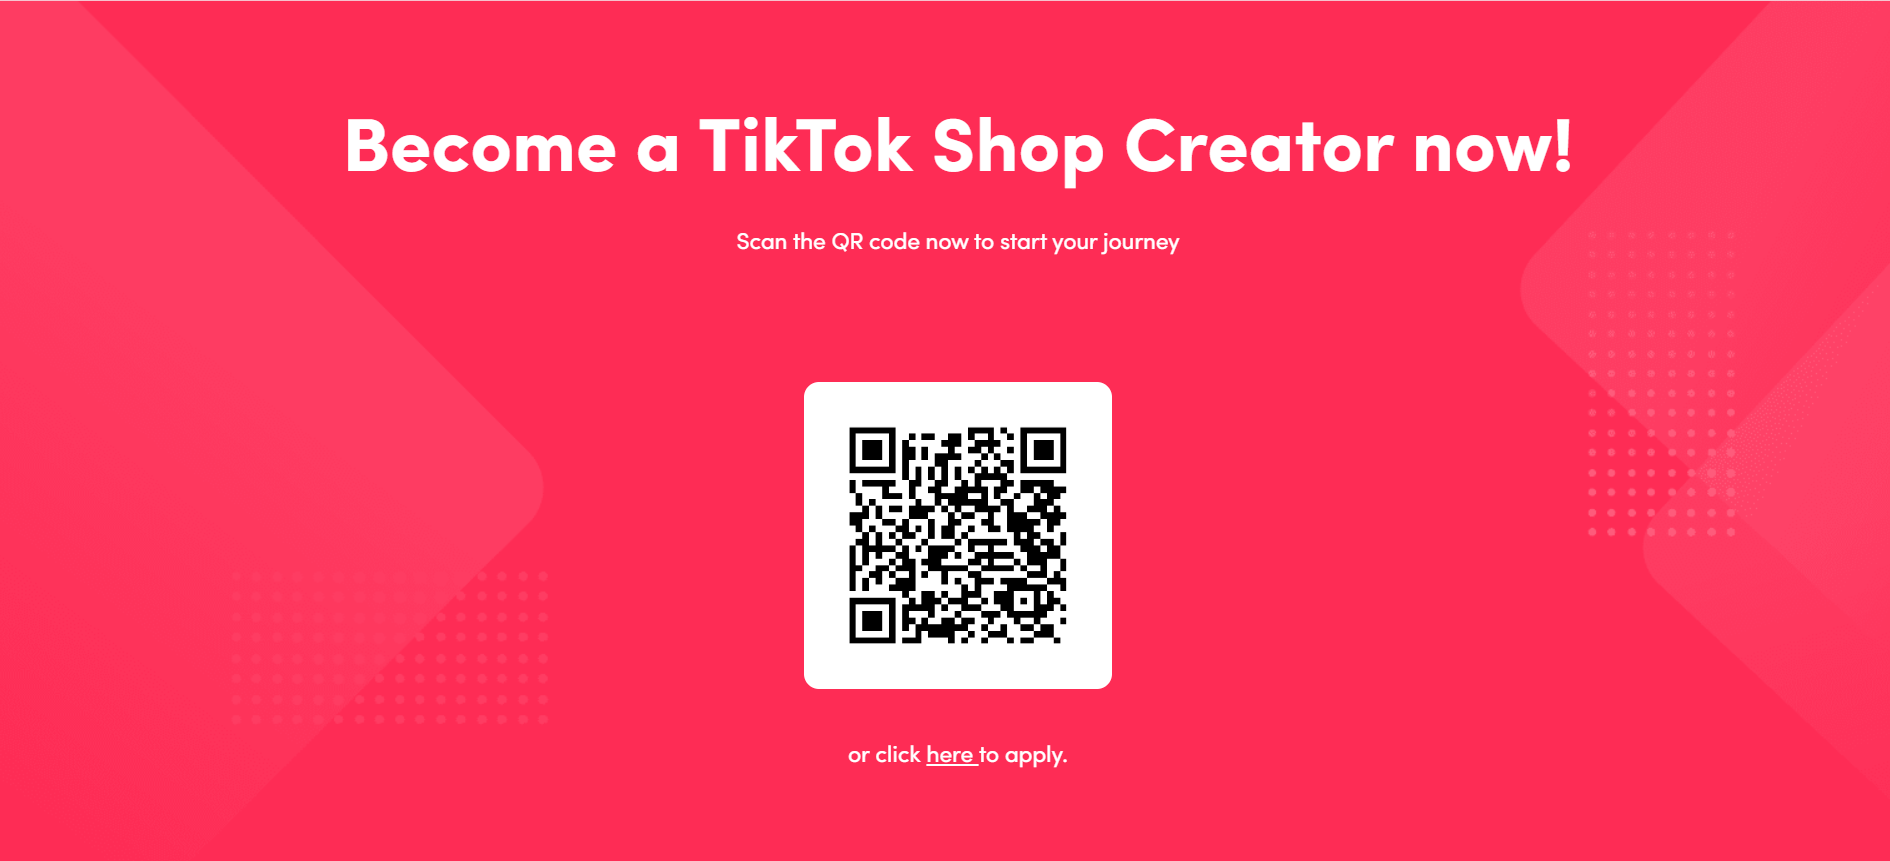 QR-код для реєстрації в Tik Tok Shop.